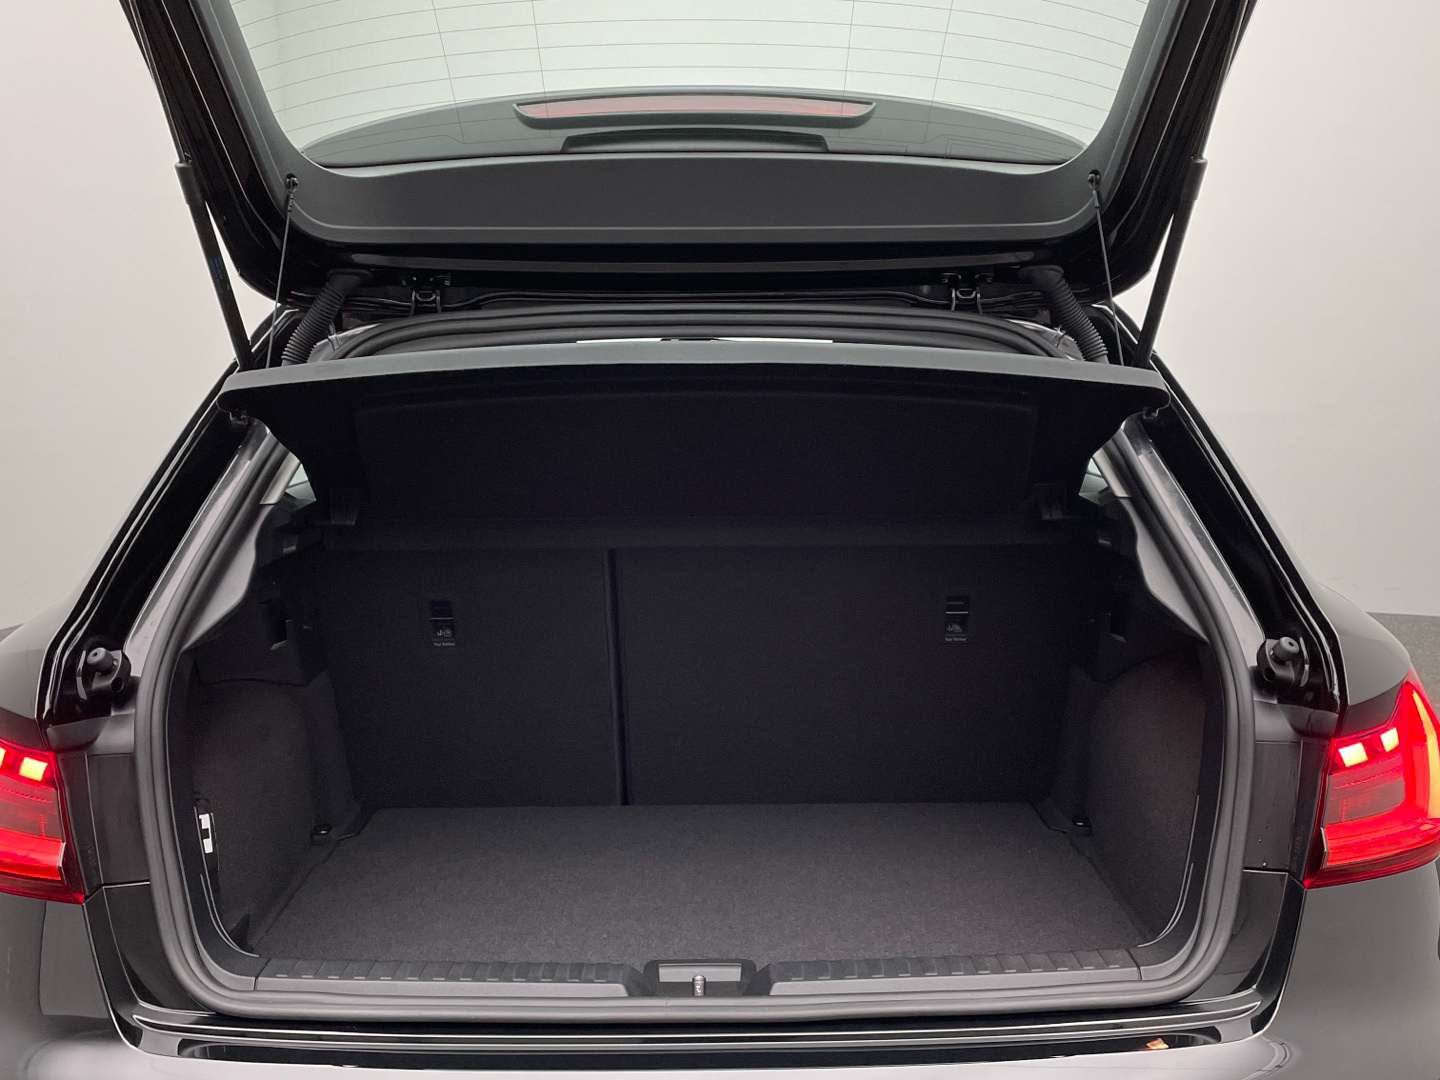 Audi A1 Sportback 30 TFSI LED Plus-Paket phone box 